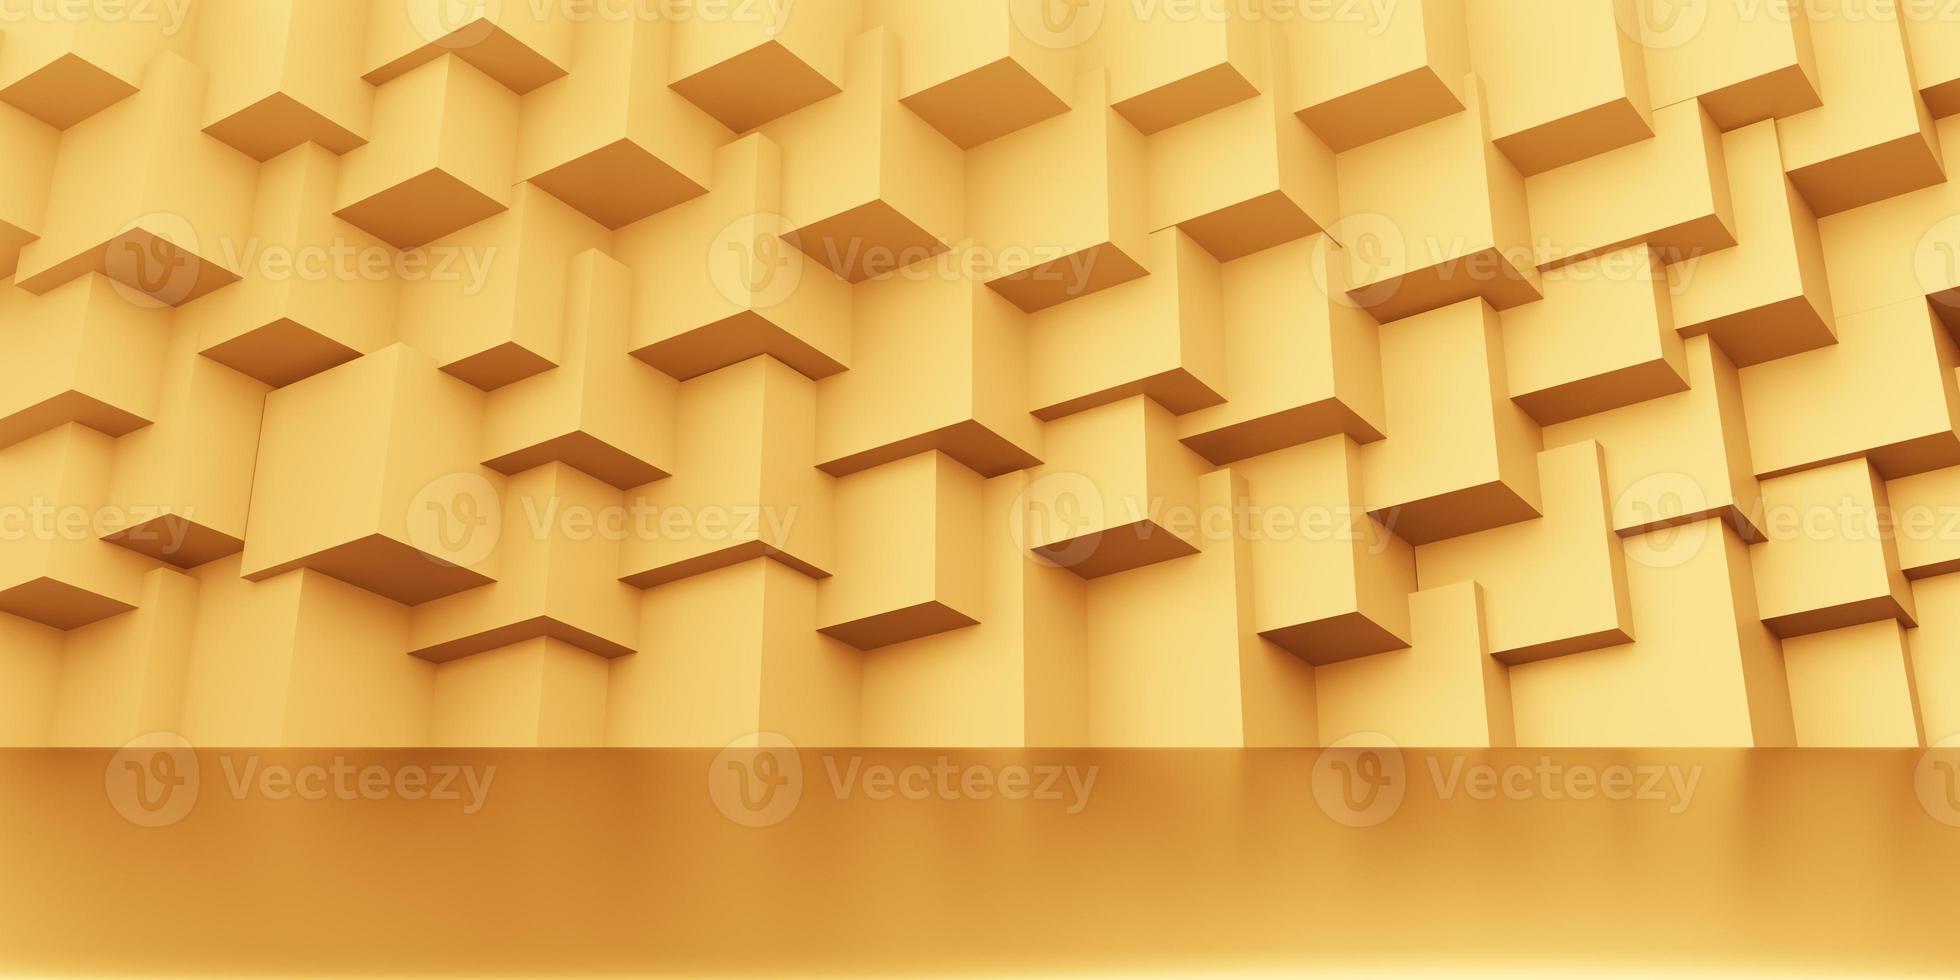 3D-Rendering von leerem Gold abstrakten geometrischen minimalen Konzepthintergrund. szene für werbung, kosmetik, showroom, banner, mode, technik, business, luxus. Illustration. Warenpräsentation foto